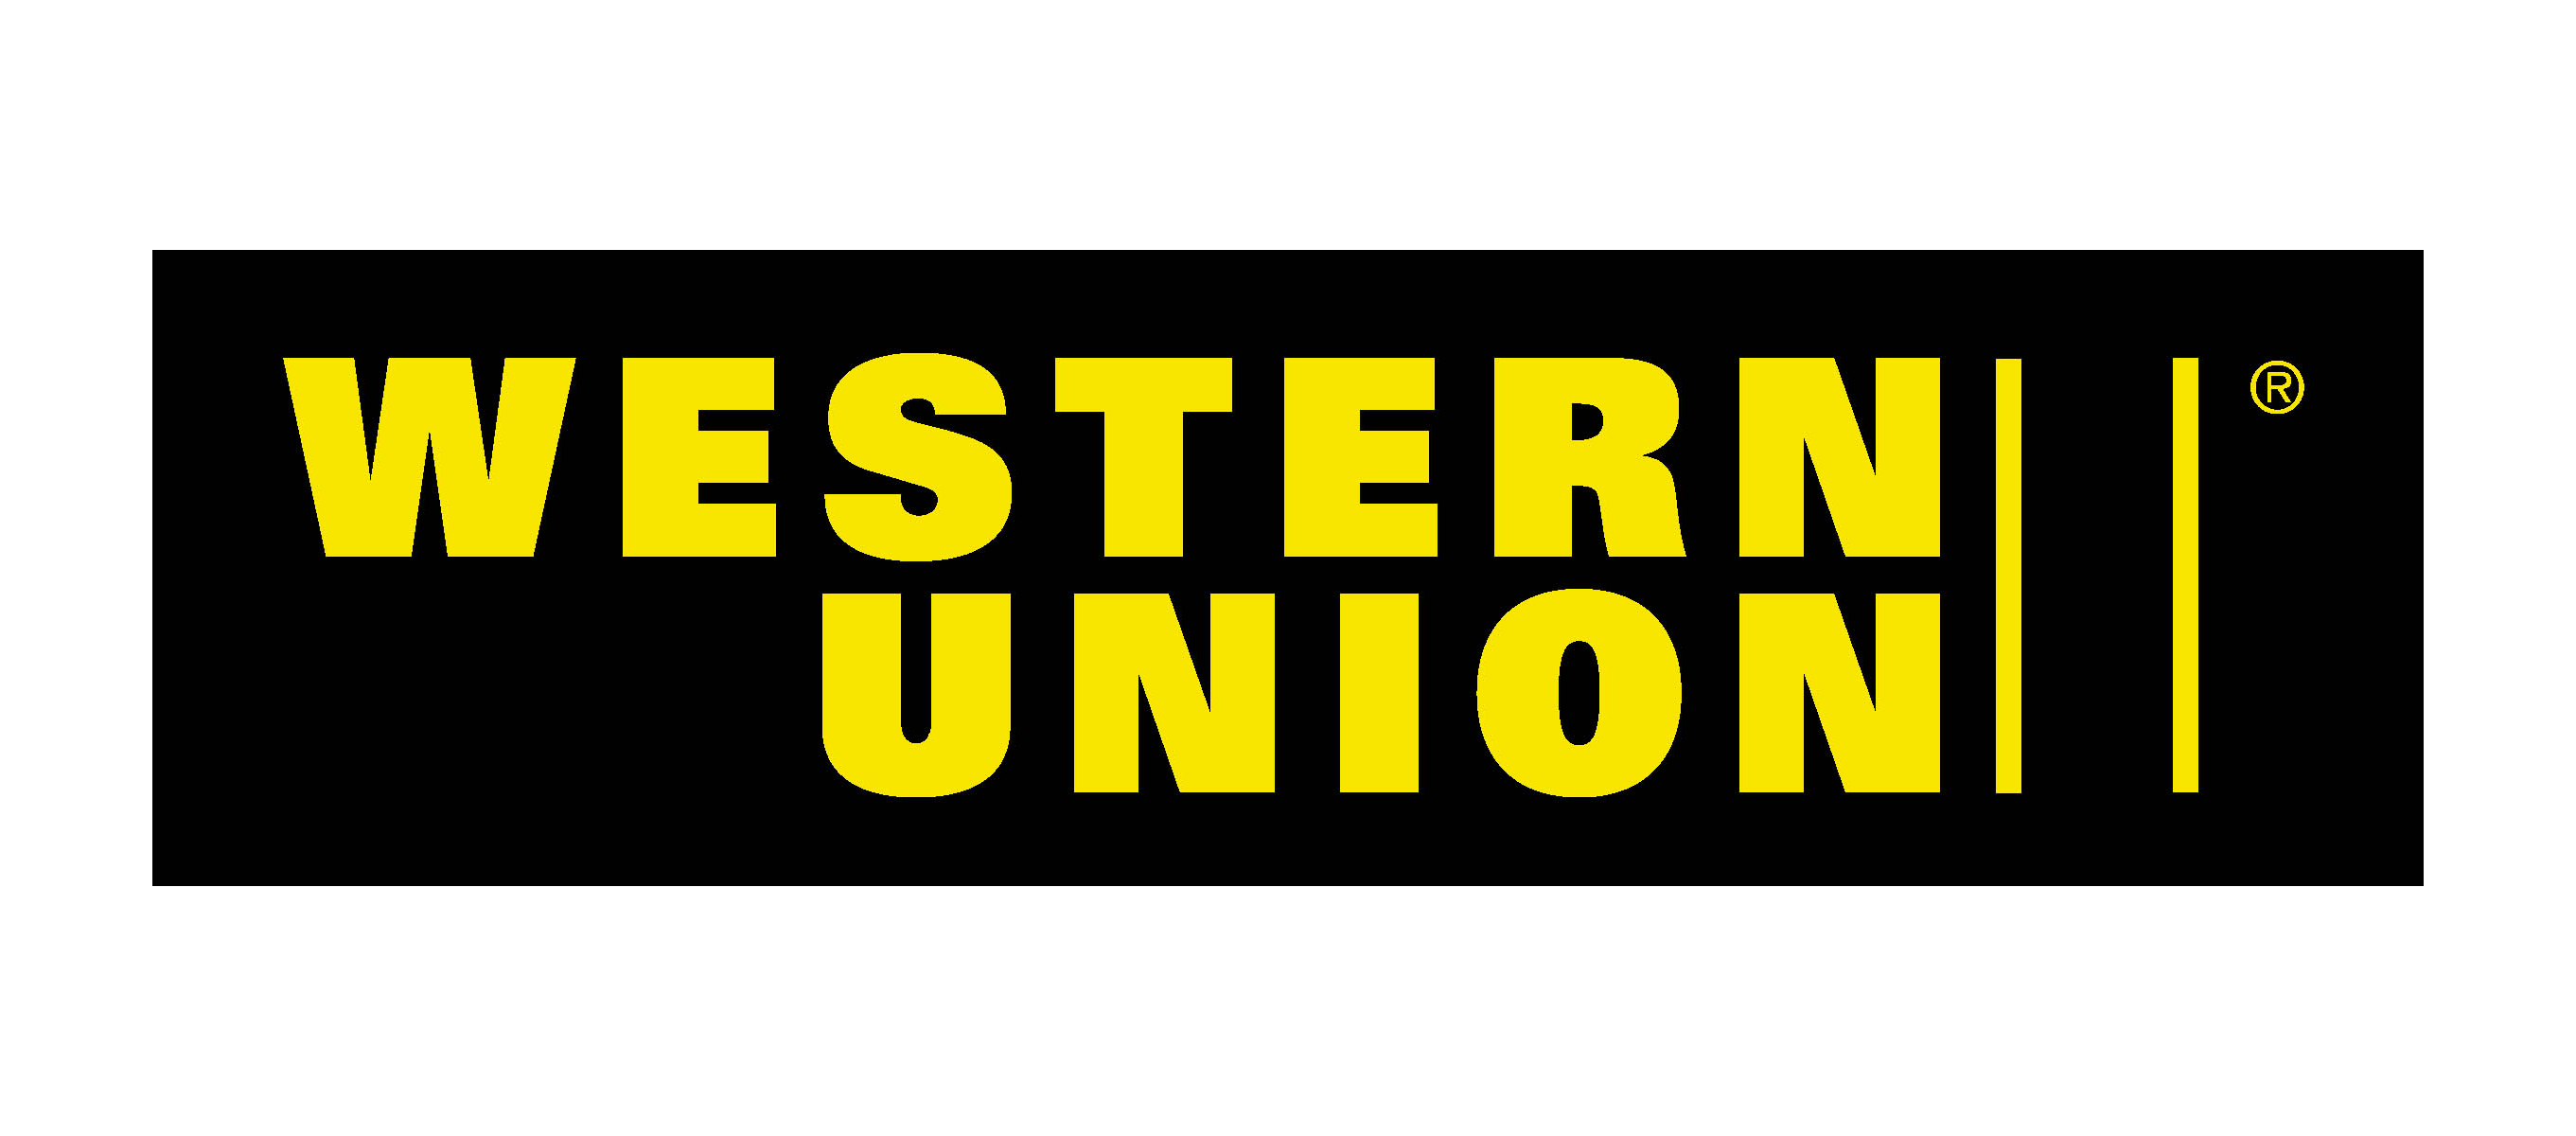 Western Unioin Logo Wallpaper